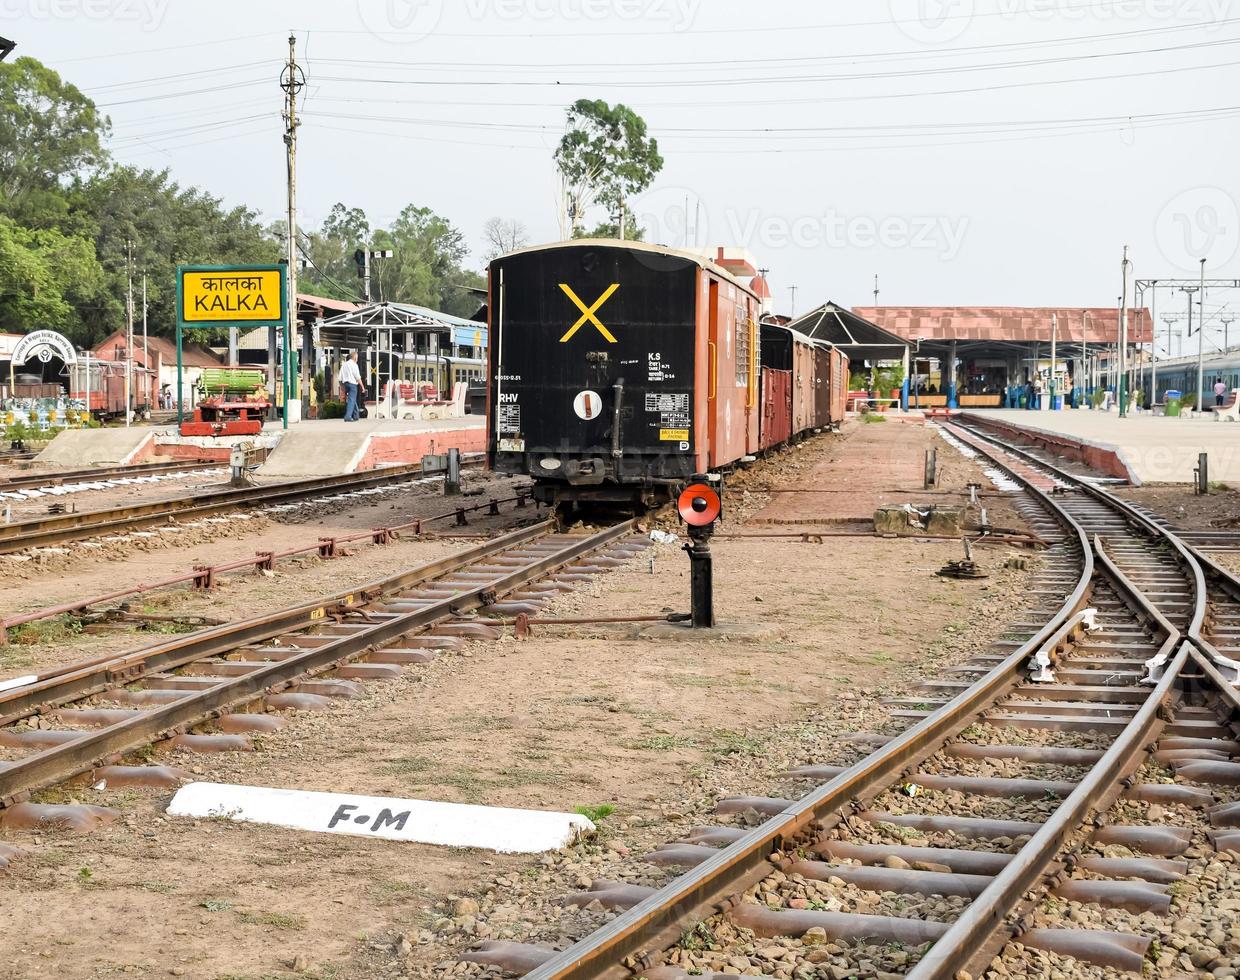 vue sur les voies ferrées du train jouet depuis le milieu pendant la journée près de la gare de kalka en inde, vue sur la voie du train jouet, jonction ferroviaire indienne, industrie lourde photo